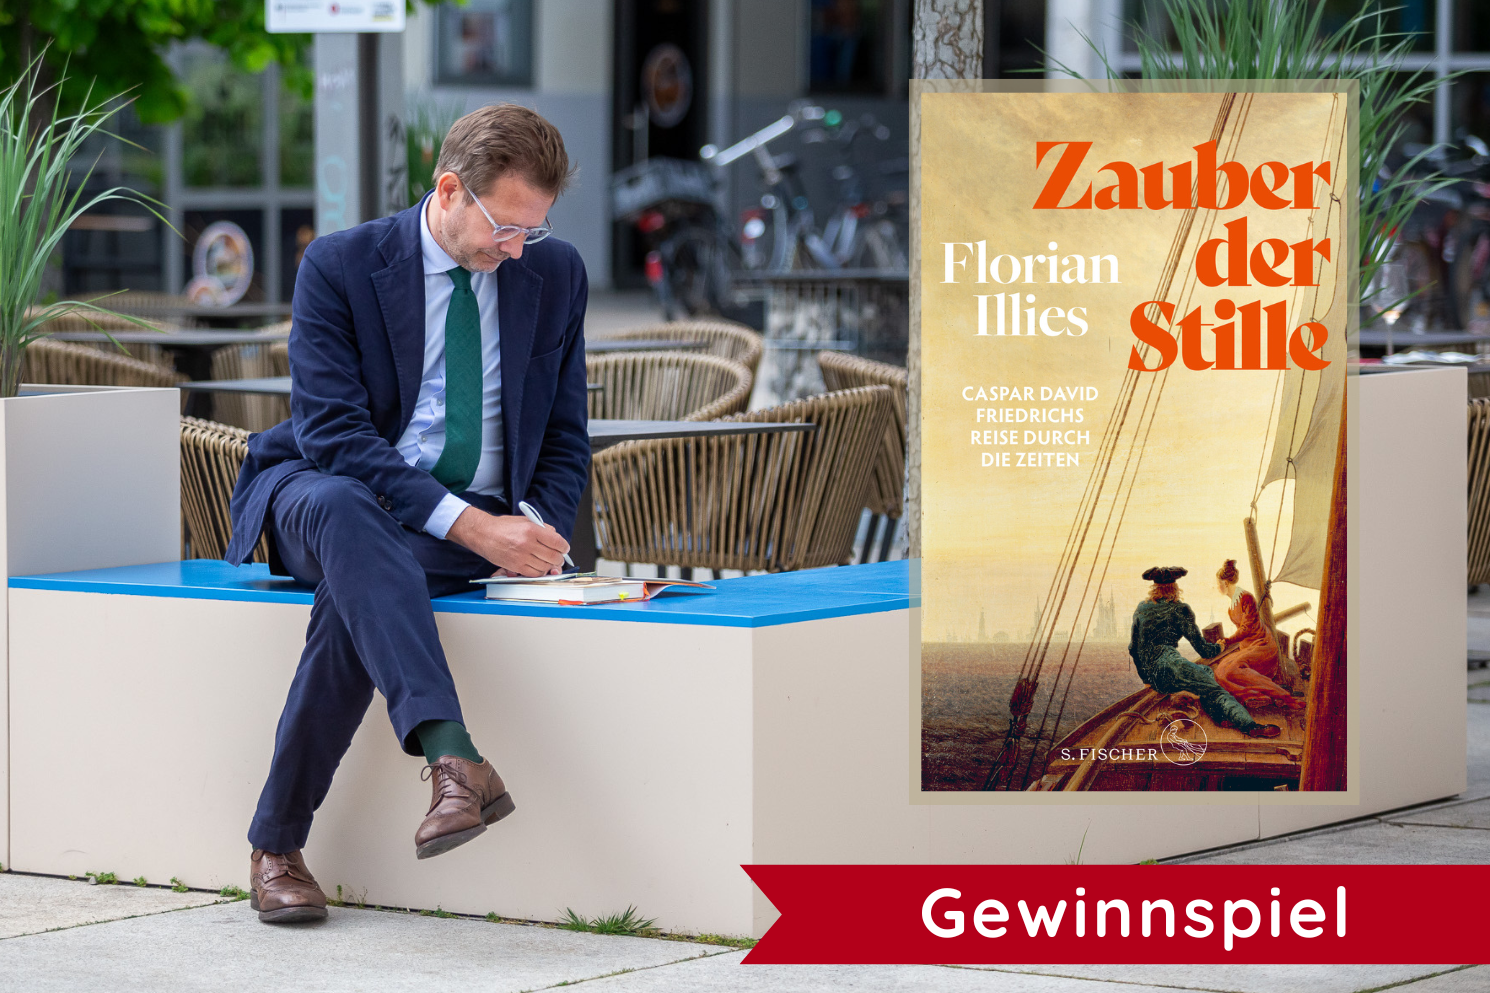 Florian Illies sitzt auf einer Bank und Schreibt in ein Buch, das vor ihm liegt. Links im Bild sieht man das Buchcover von "Zauber der Stille", darunter steht in weiß auf einem roten Banner "Gewinnspiel"